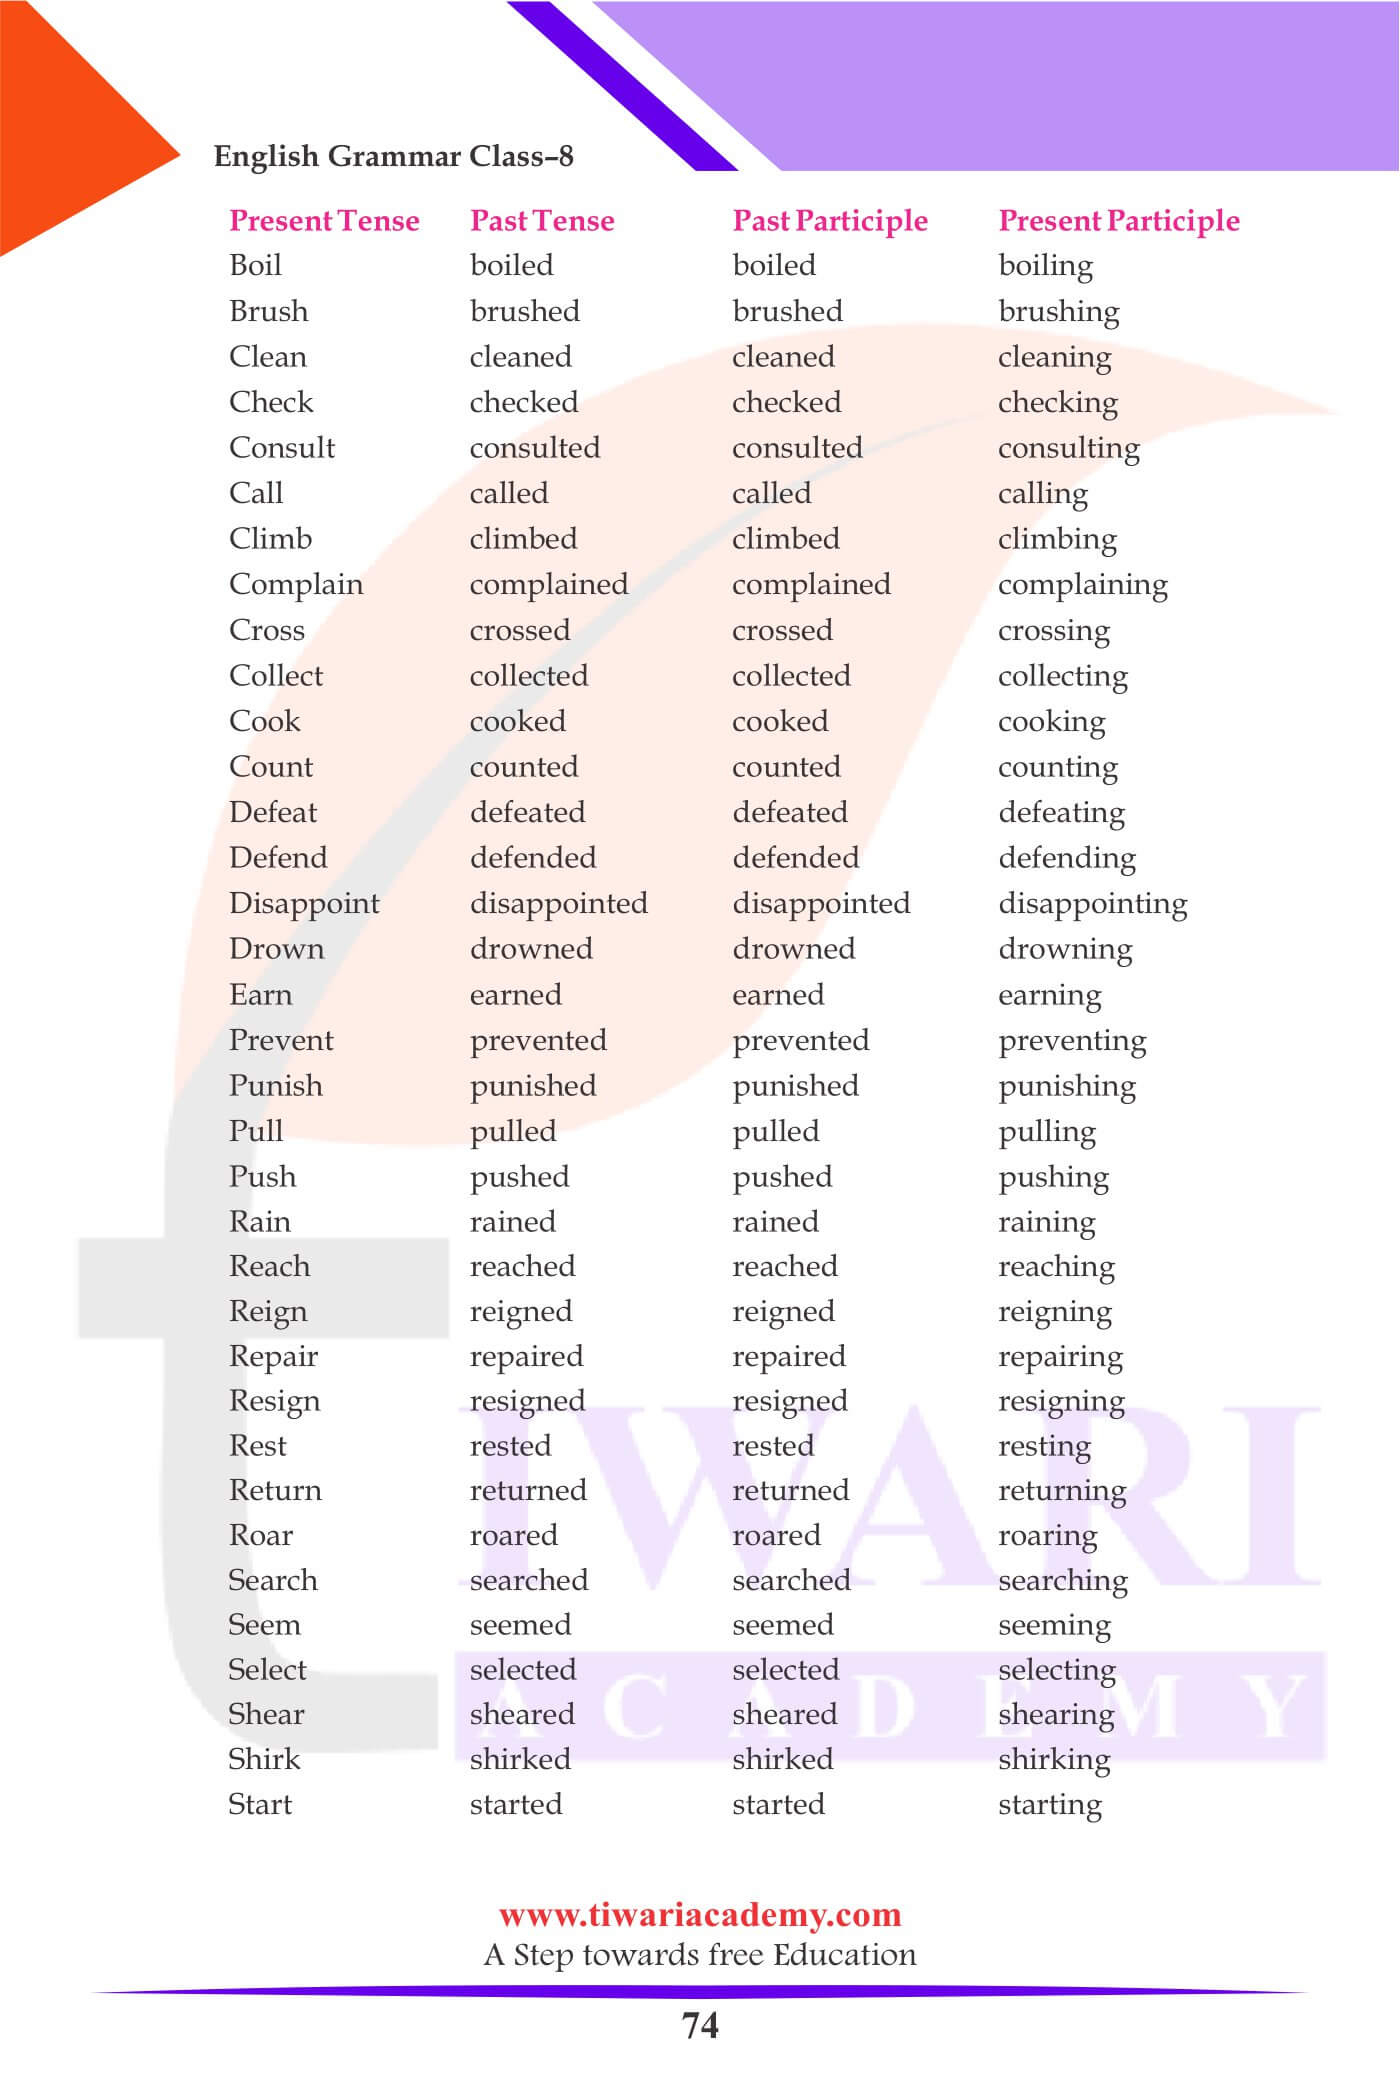 Class 8 Grammar Verb types